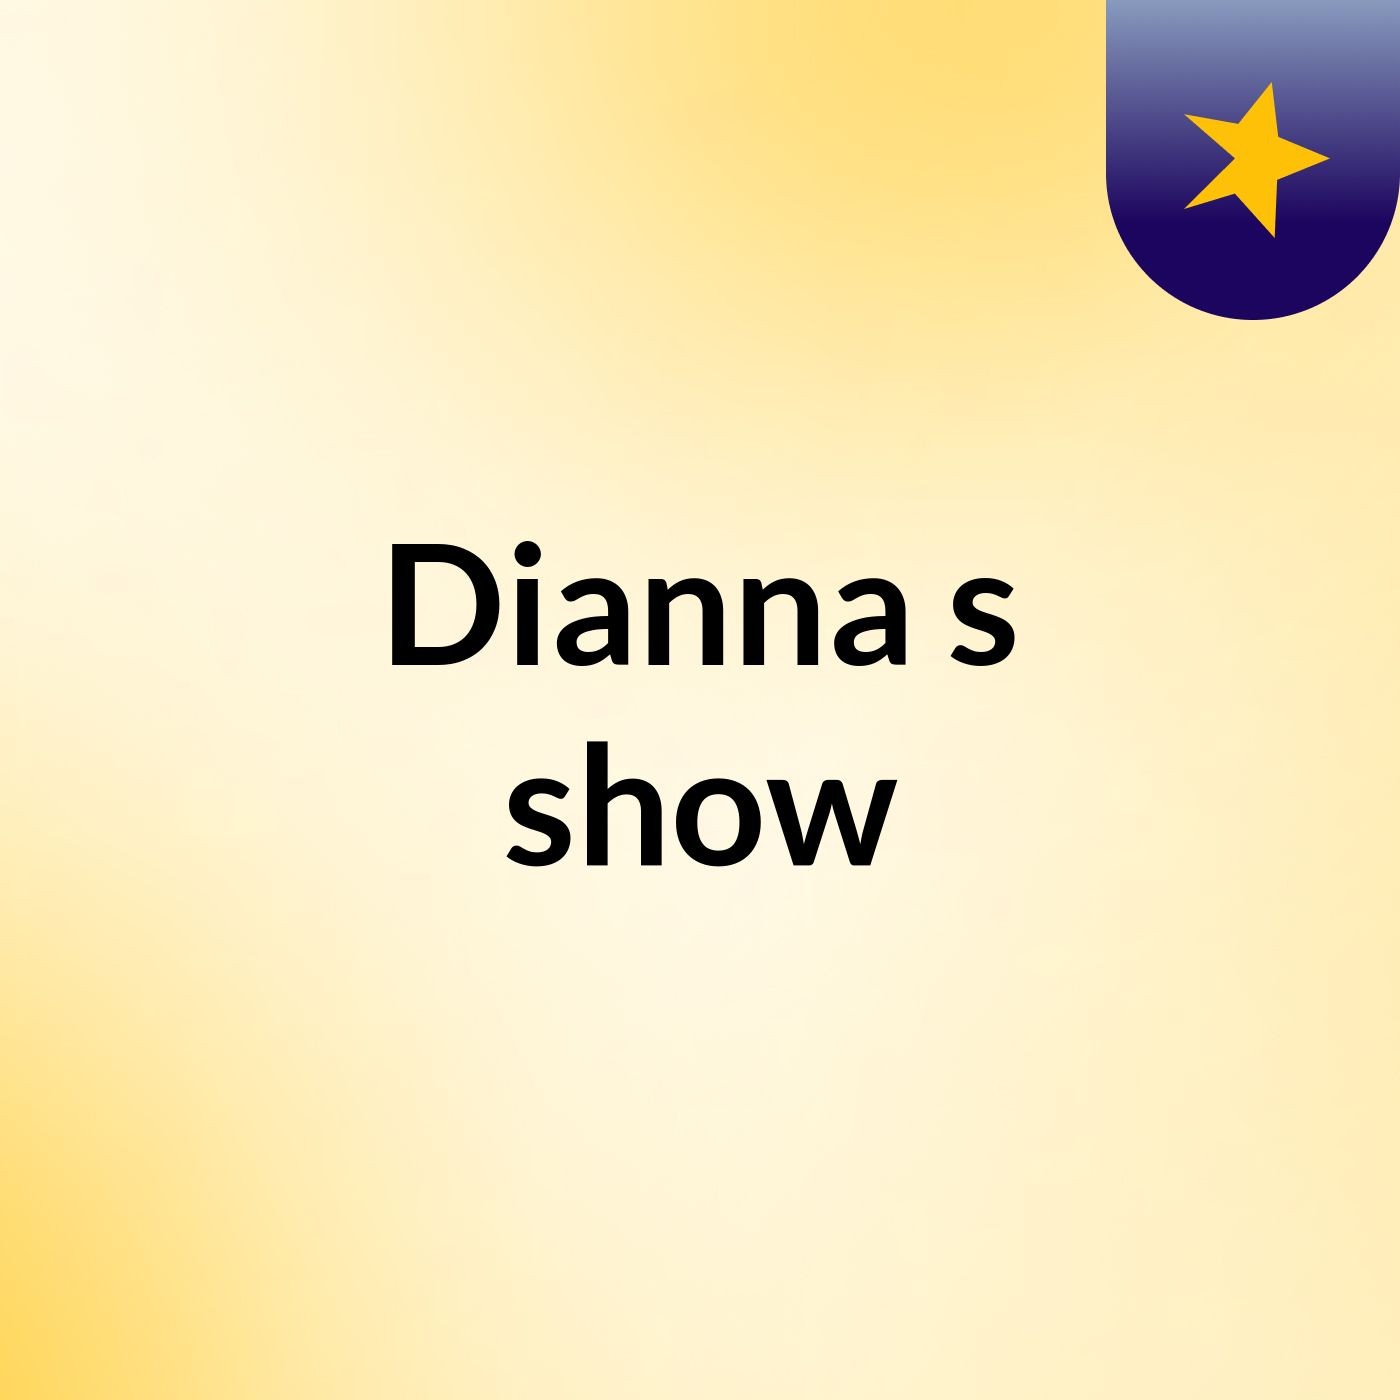 Dianna's show